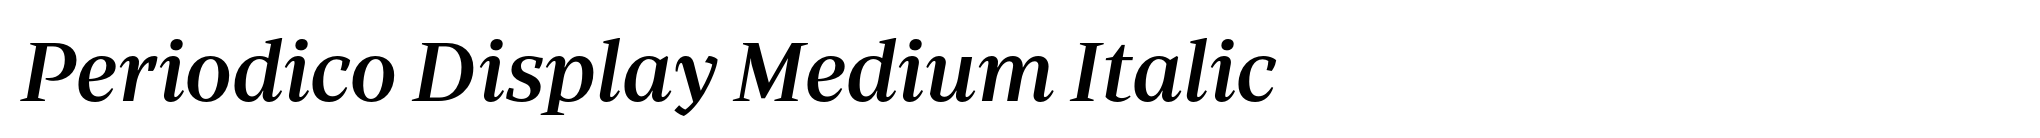 Periodico Display Medium Italic image